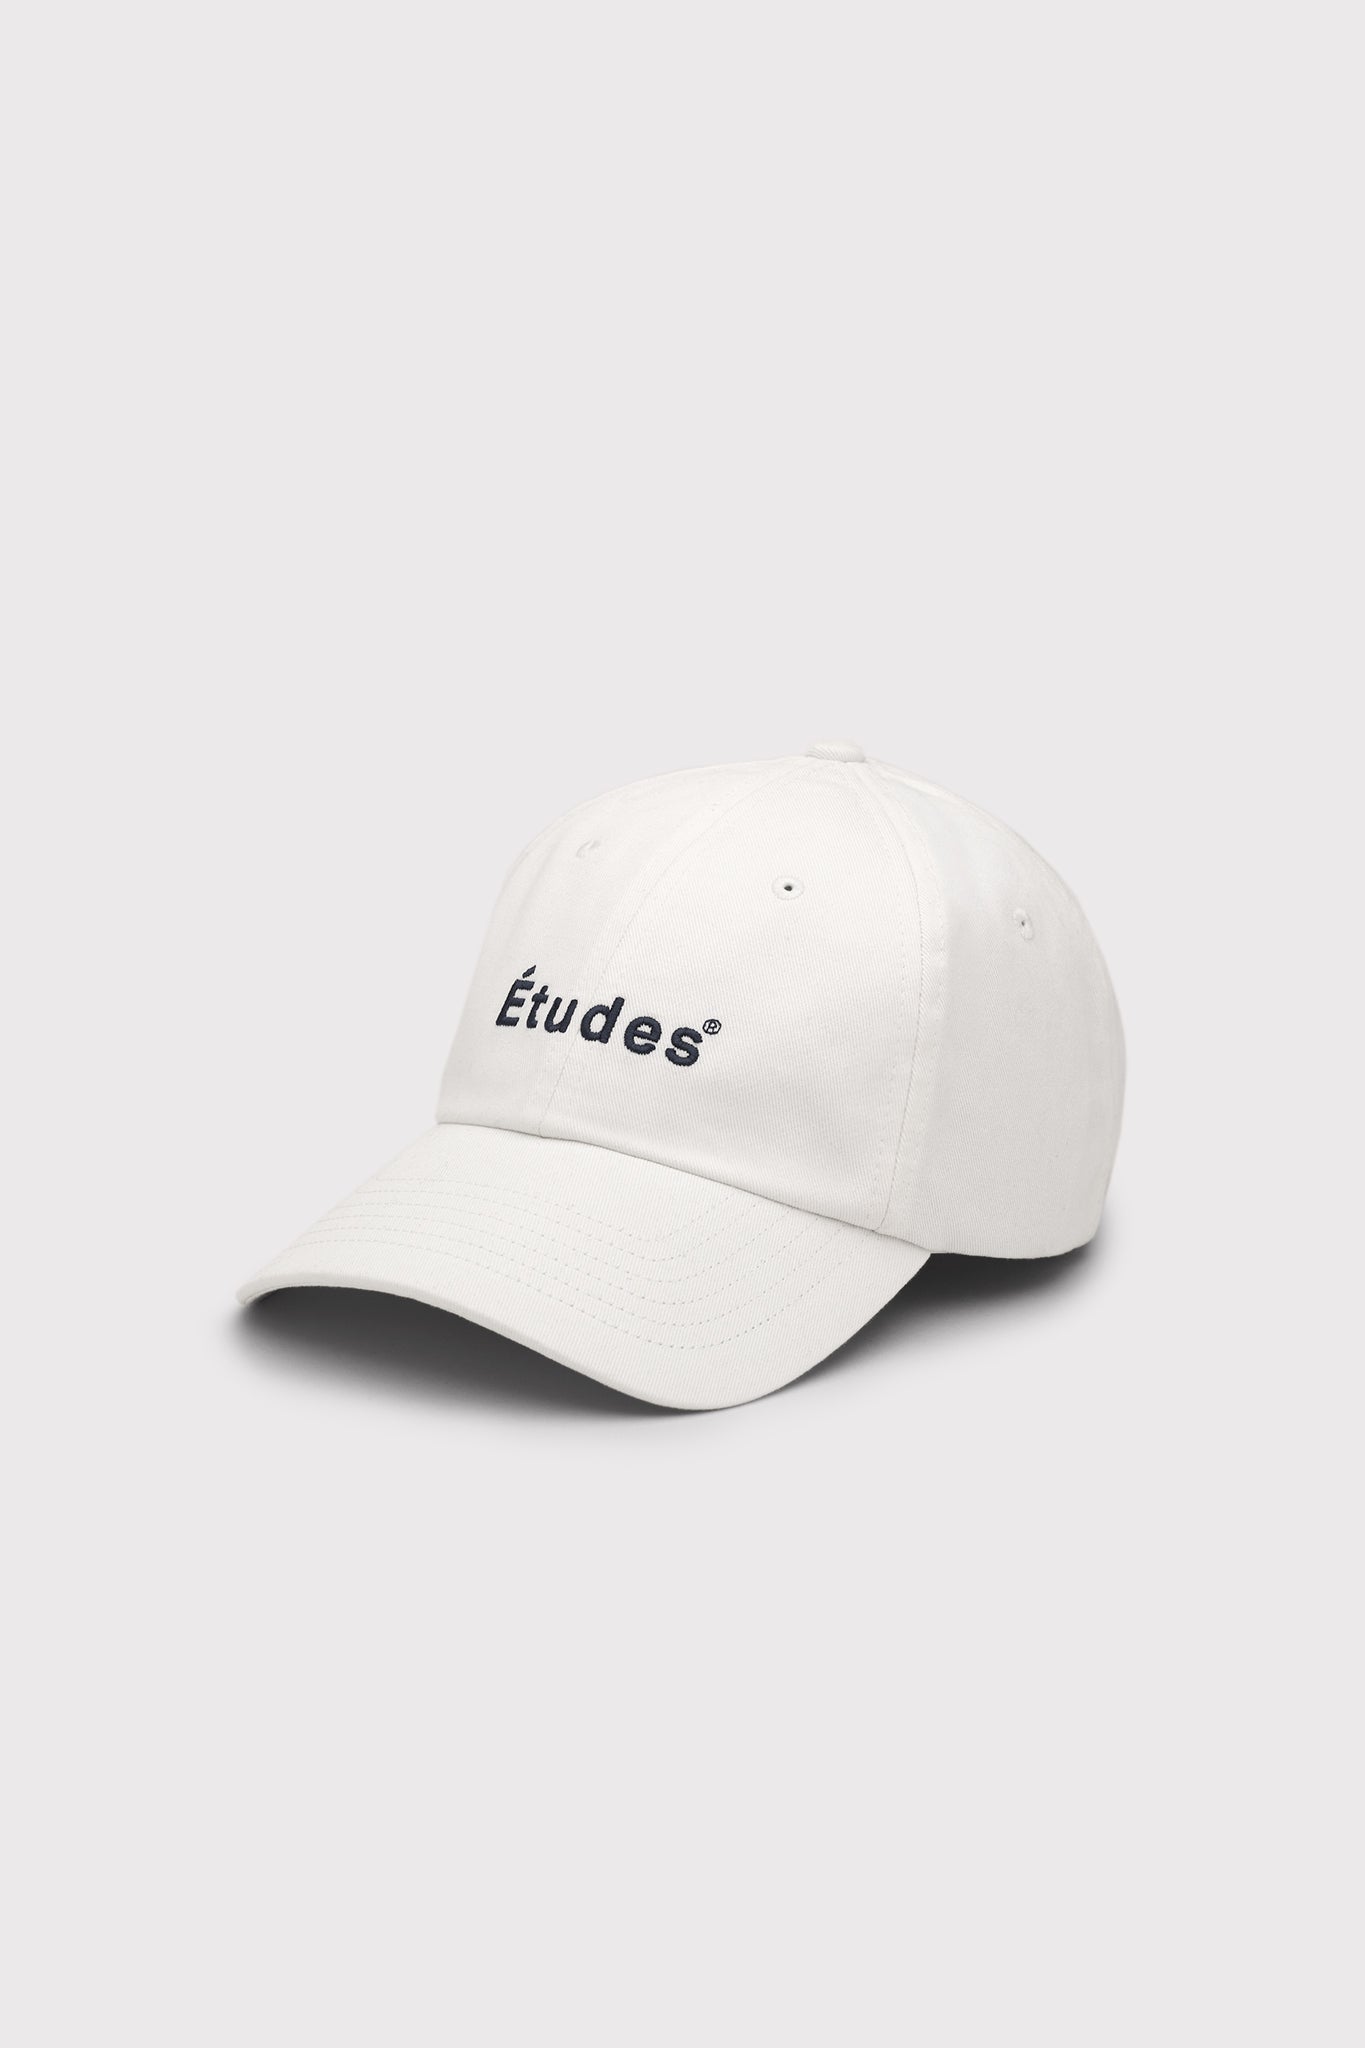 ÉTUDES BOOSTER ETUDES WHITE HATS 1